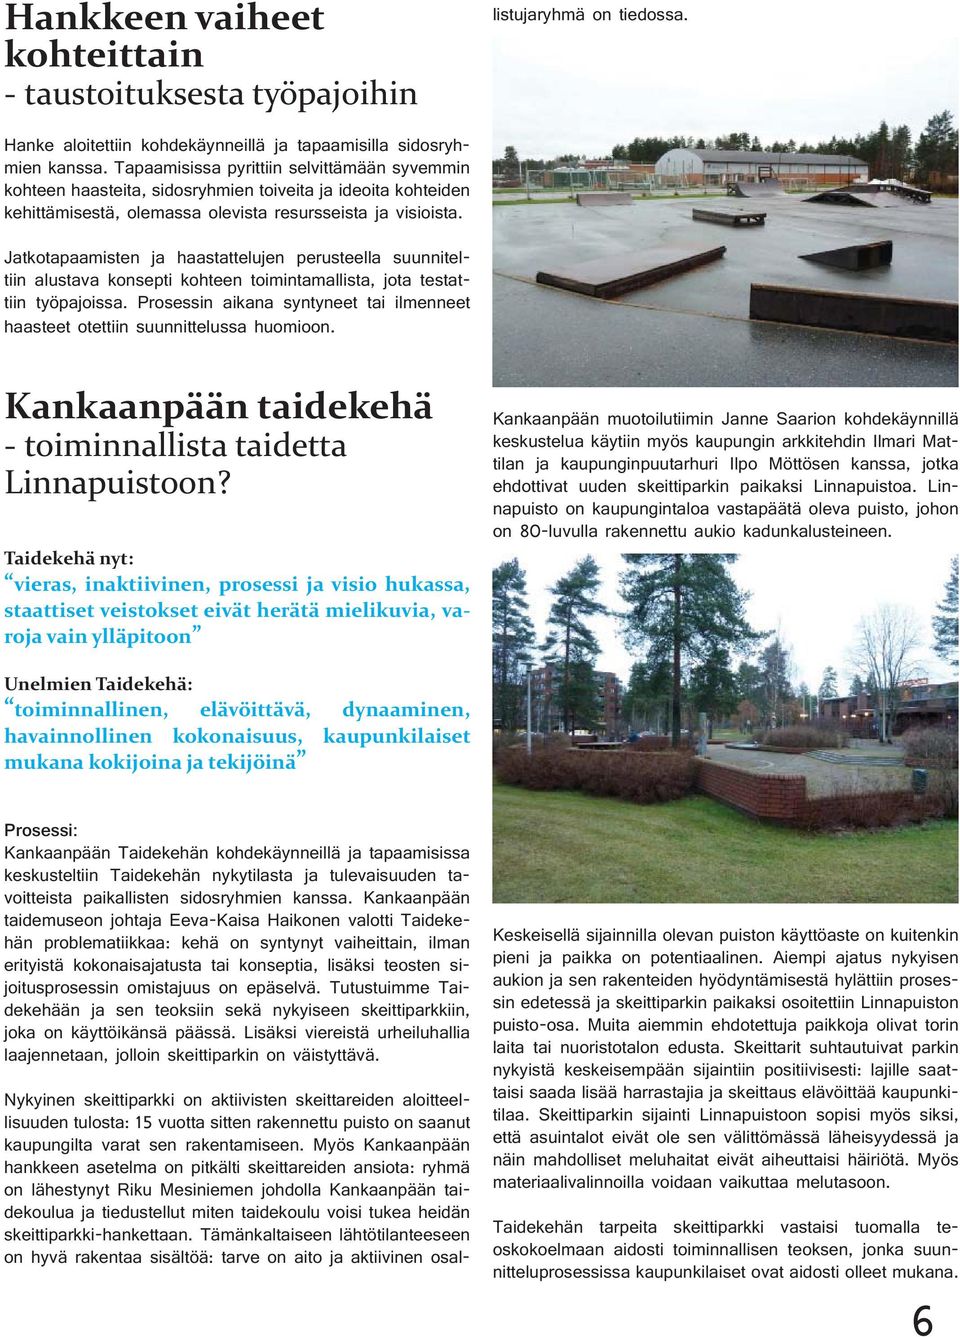 Myös Kankaanpään hankkeen asetelma on pitkälti skeittareiden ansiota: ryhmä on lähestynyt Riku Mesiniemen johdolla Kankaanpään taidekoulua ja tiedustellut miten taidekoulu voisi tukea heidän